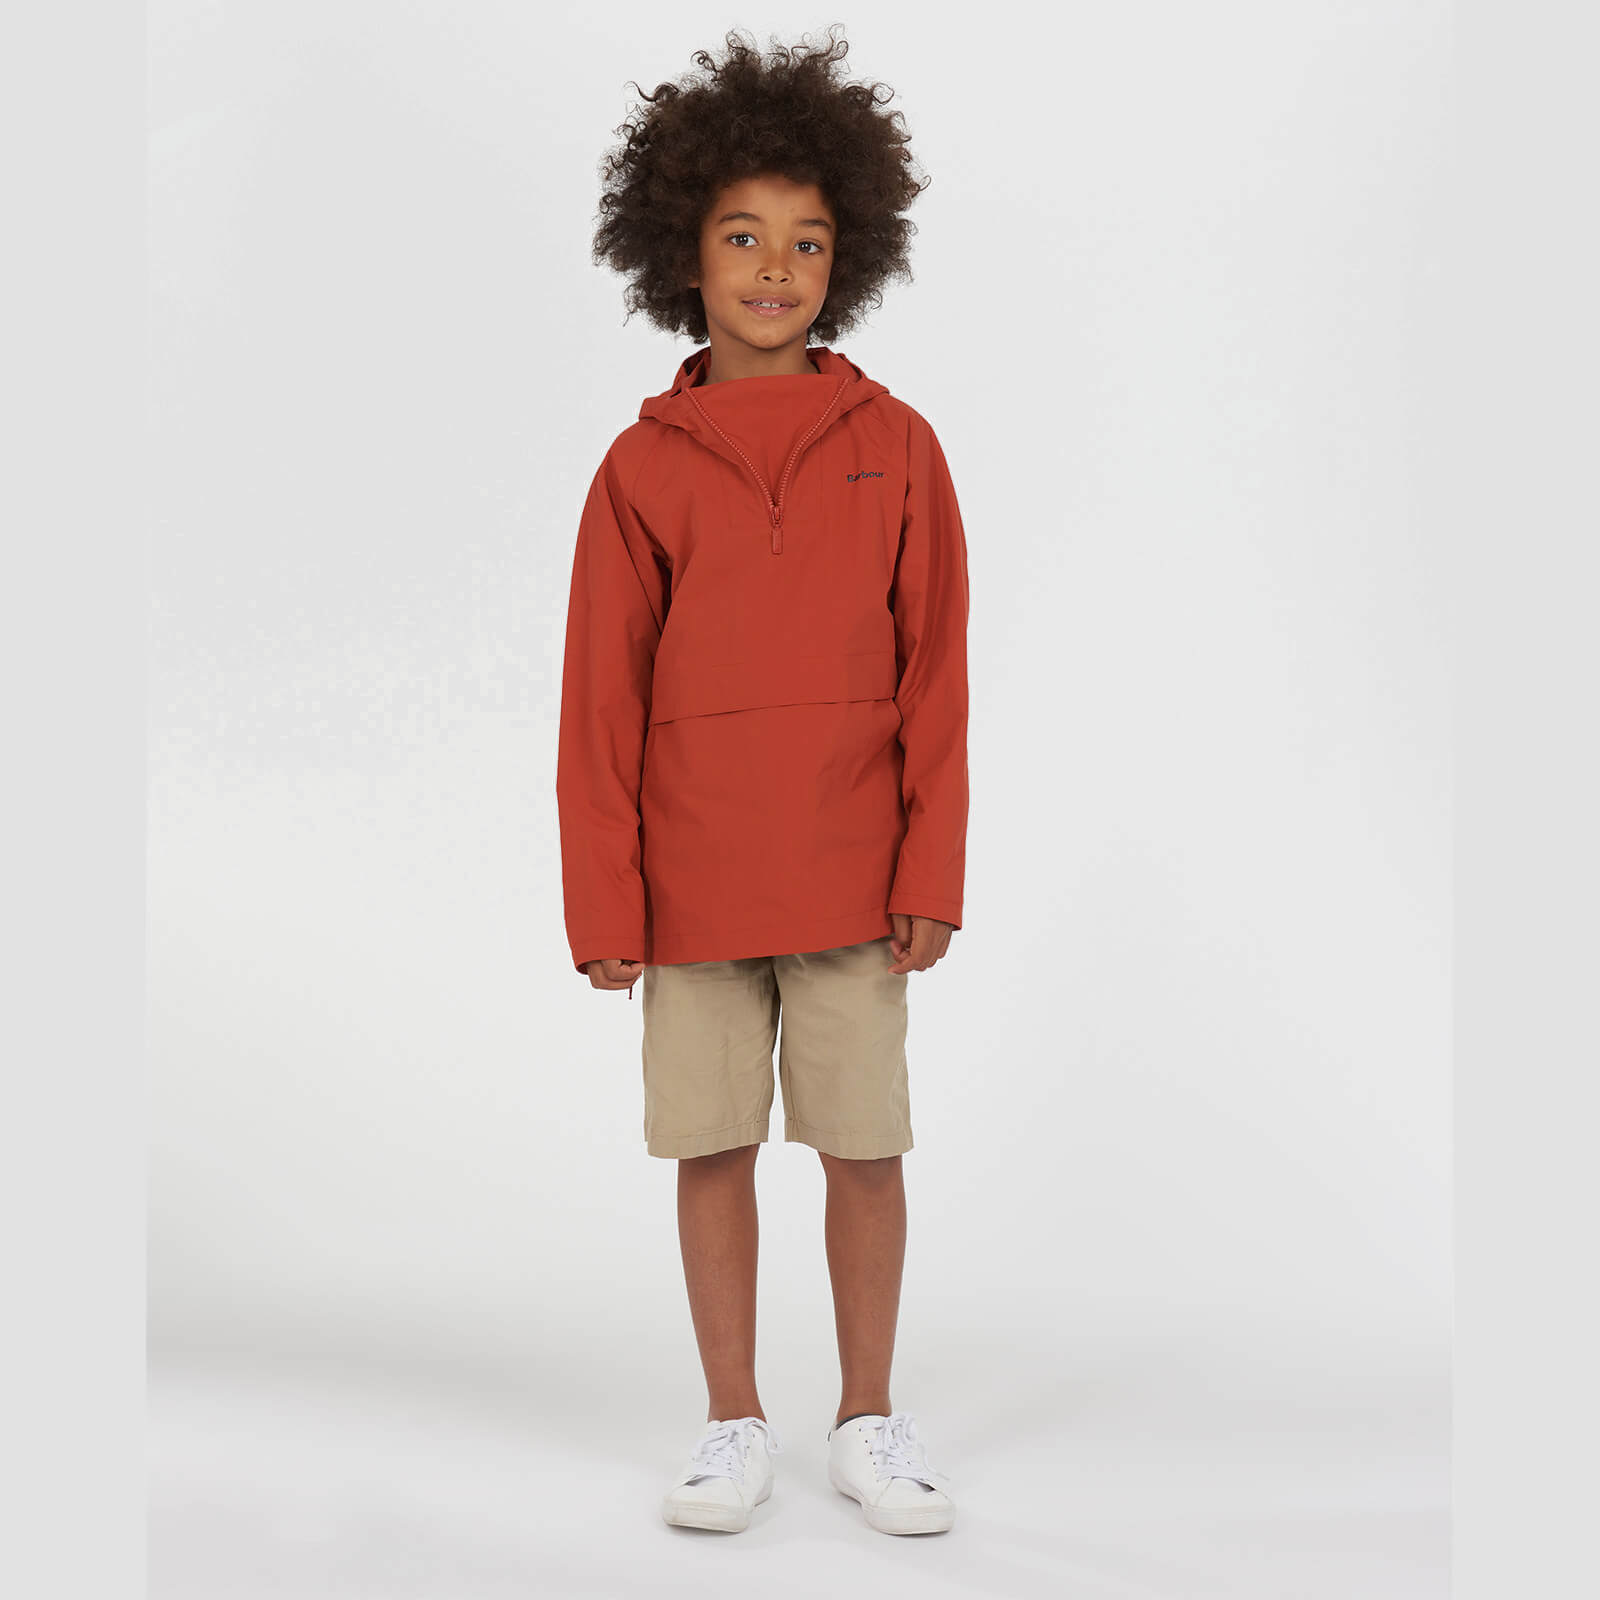 Barbour Boys' Alnot Half Zip Jacket - Sunset Orange - S (6-7 Years)